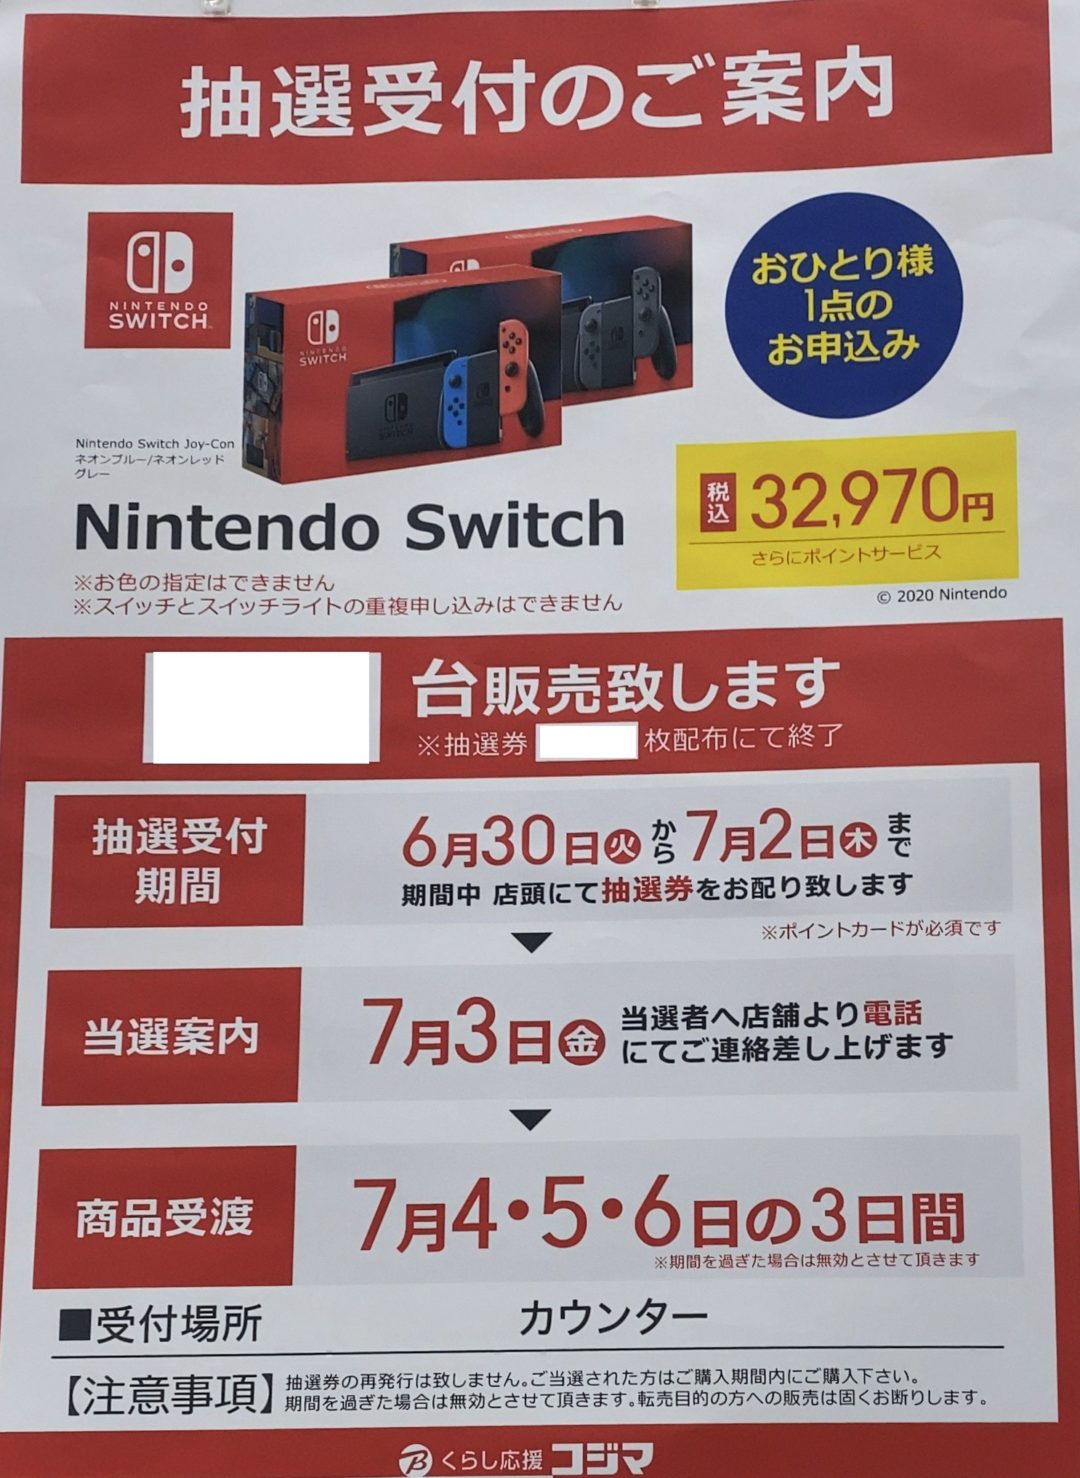 6 30 火 7 2 木 コジマ ビックカメラ店頭でnintendo Switch Switch Lite本体 リングフィット アドベンチャーの抽選 販売実施を確認